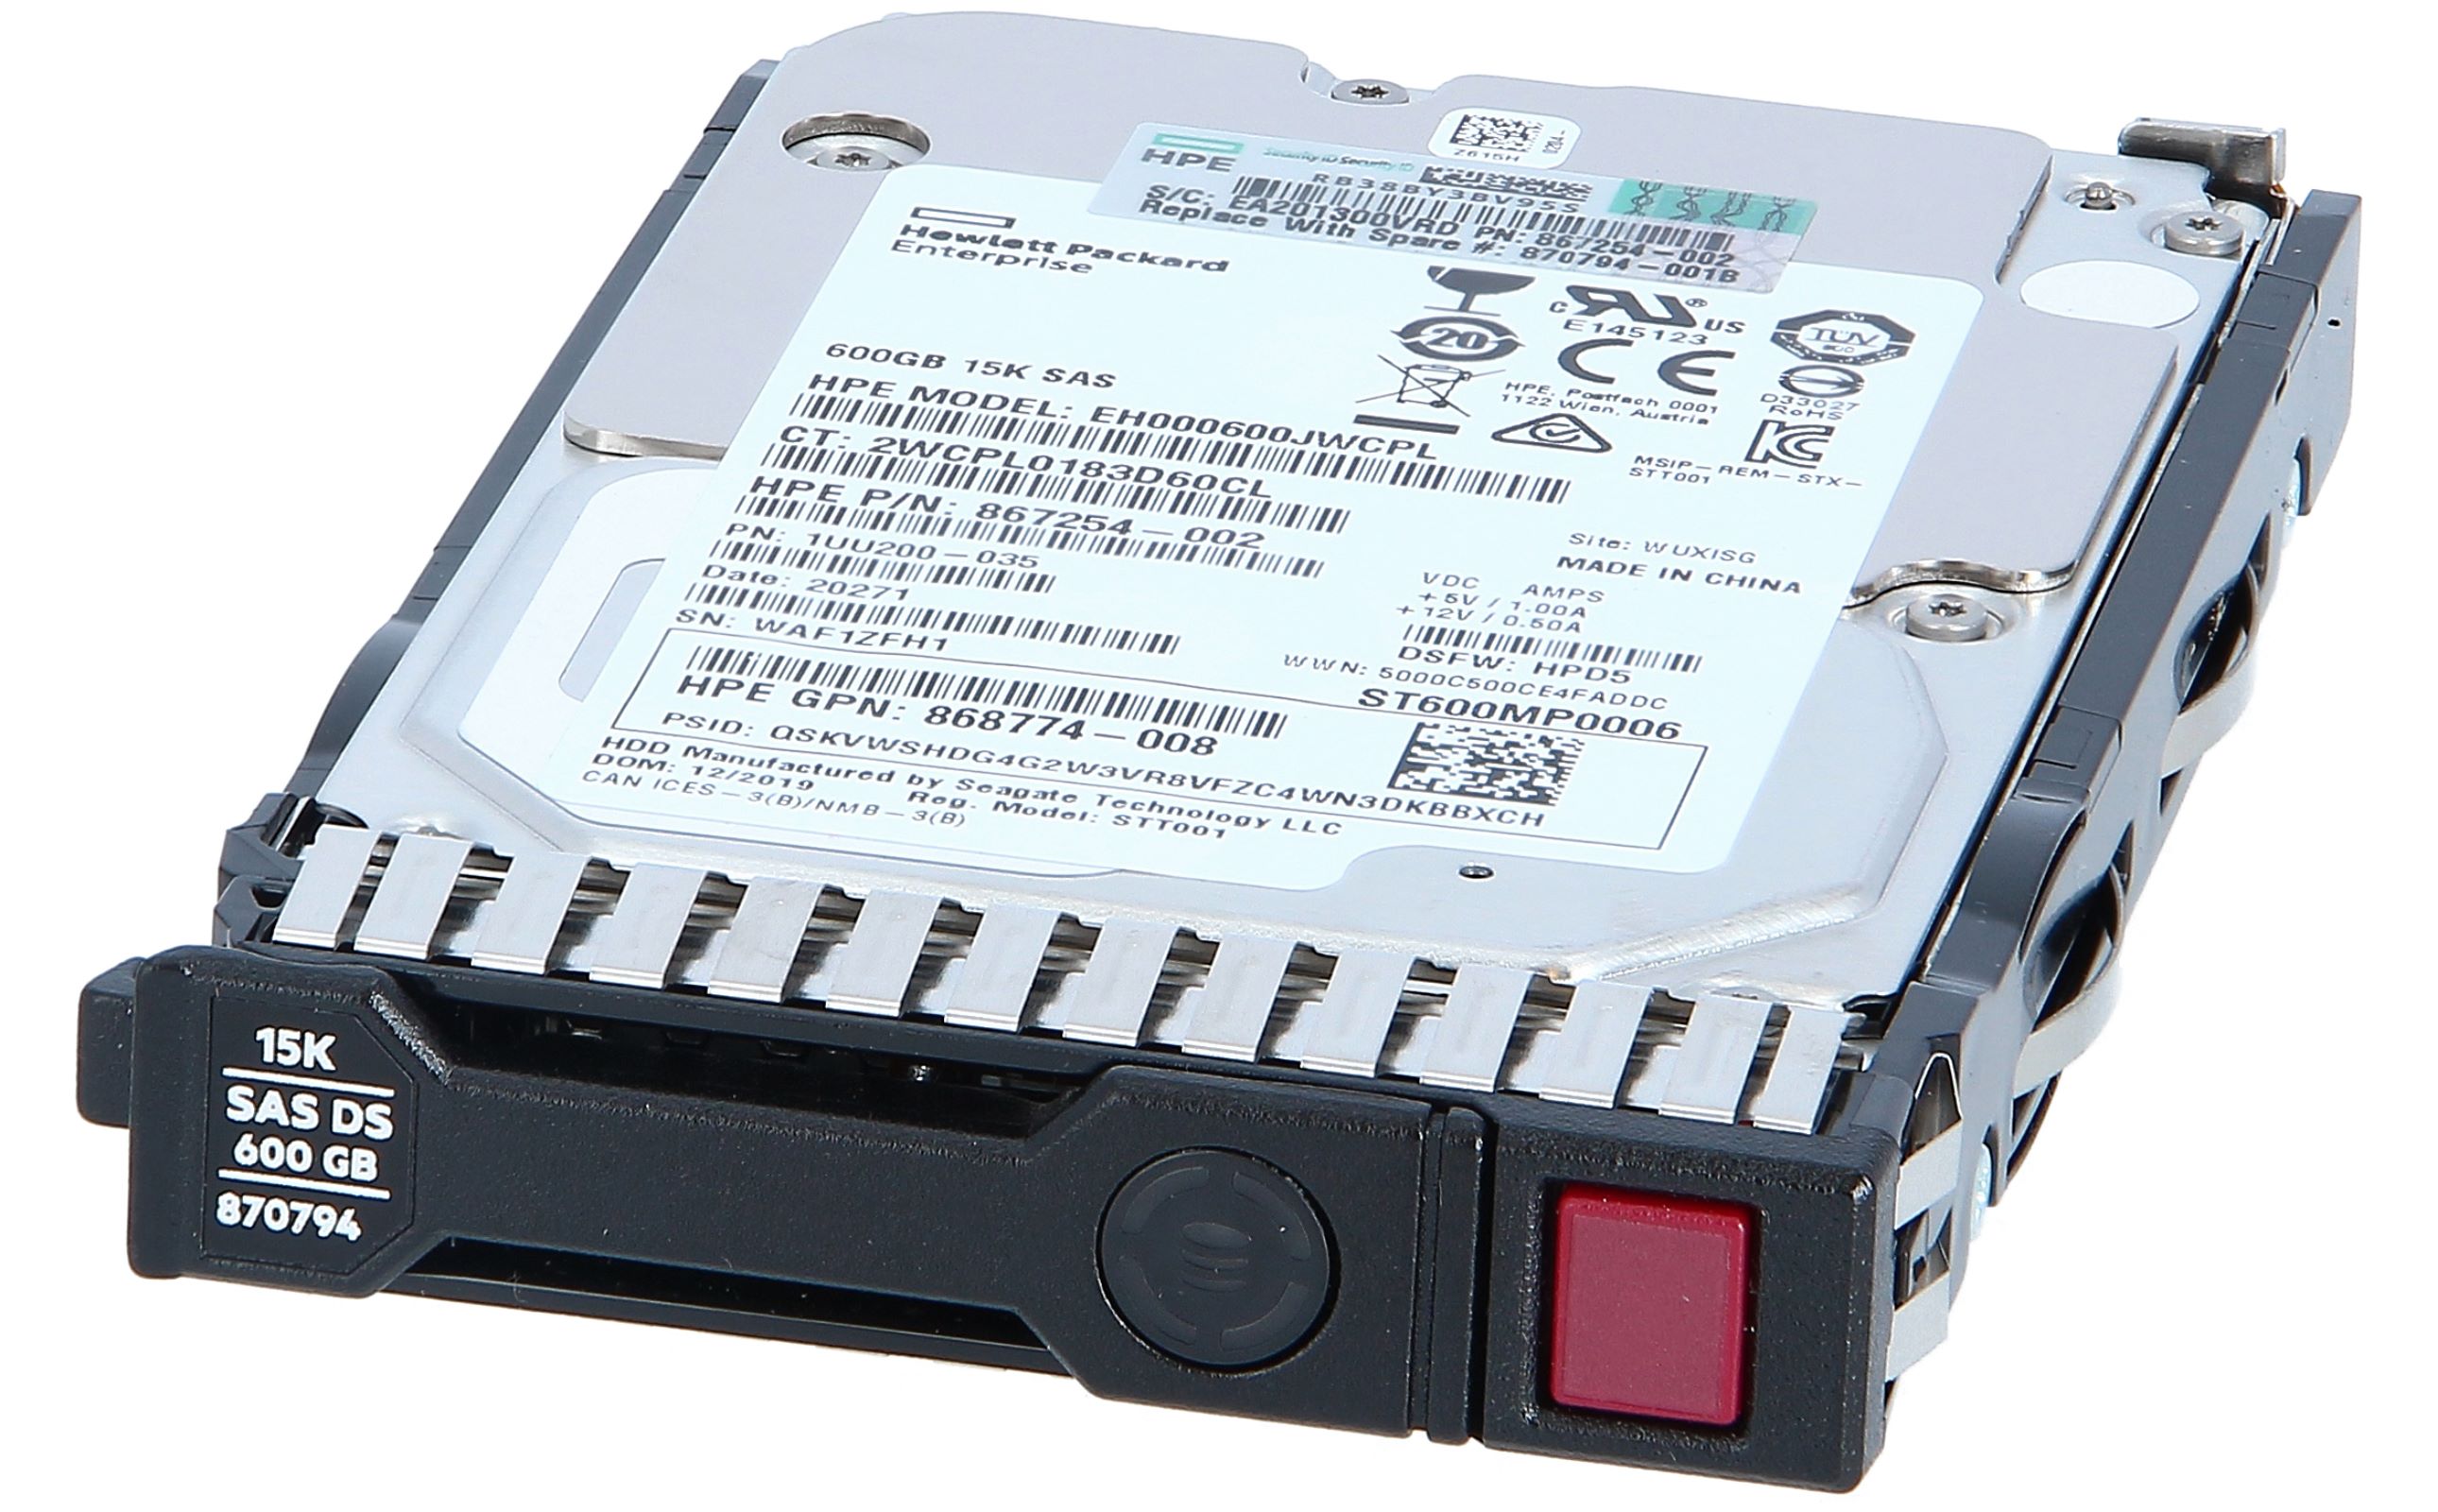 日本ヒューレットパッカード 2TB 7.2krpm LP 3.5型 6G SATA ハードディスクドライブ(861681-B21)